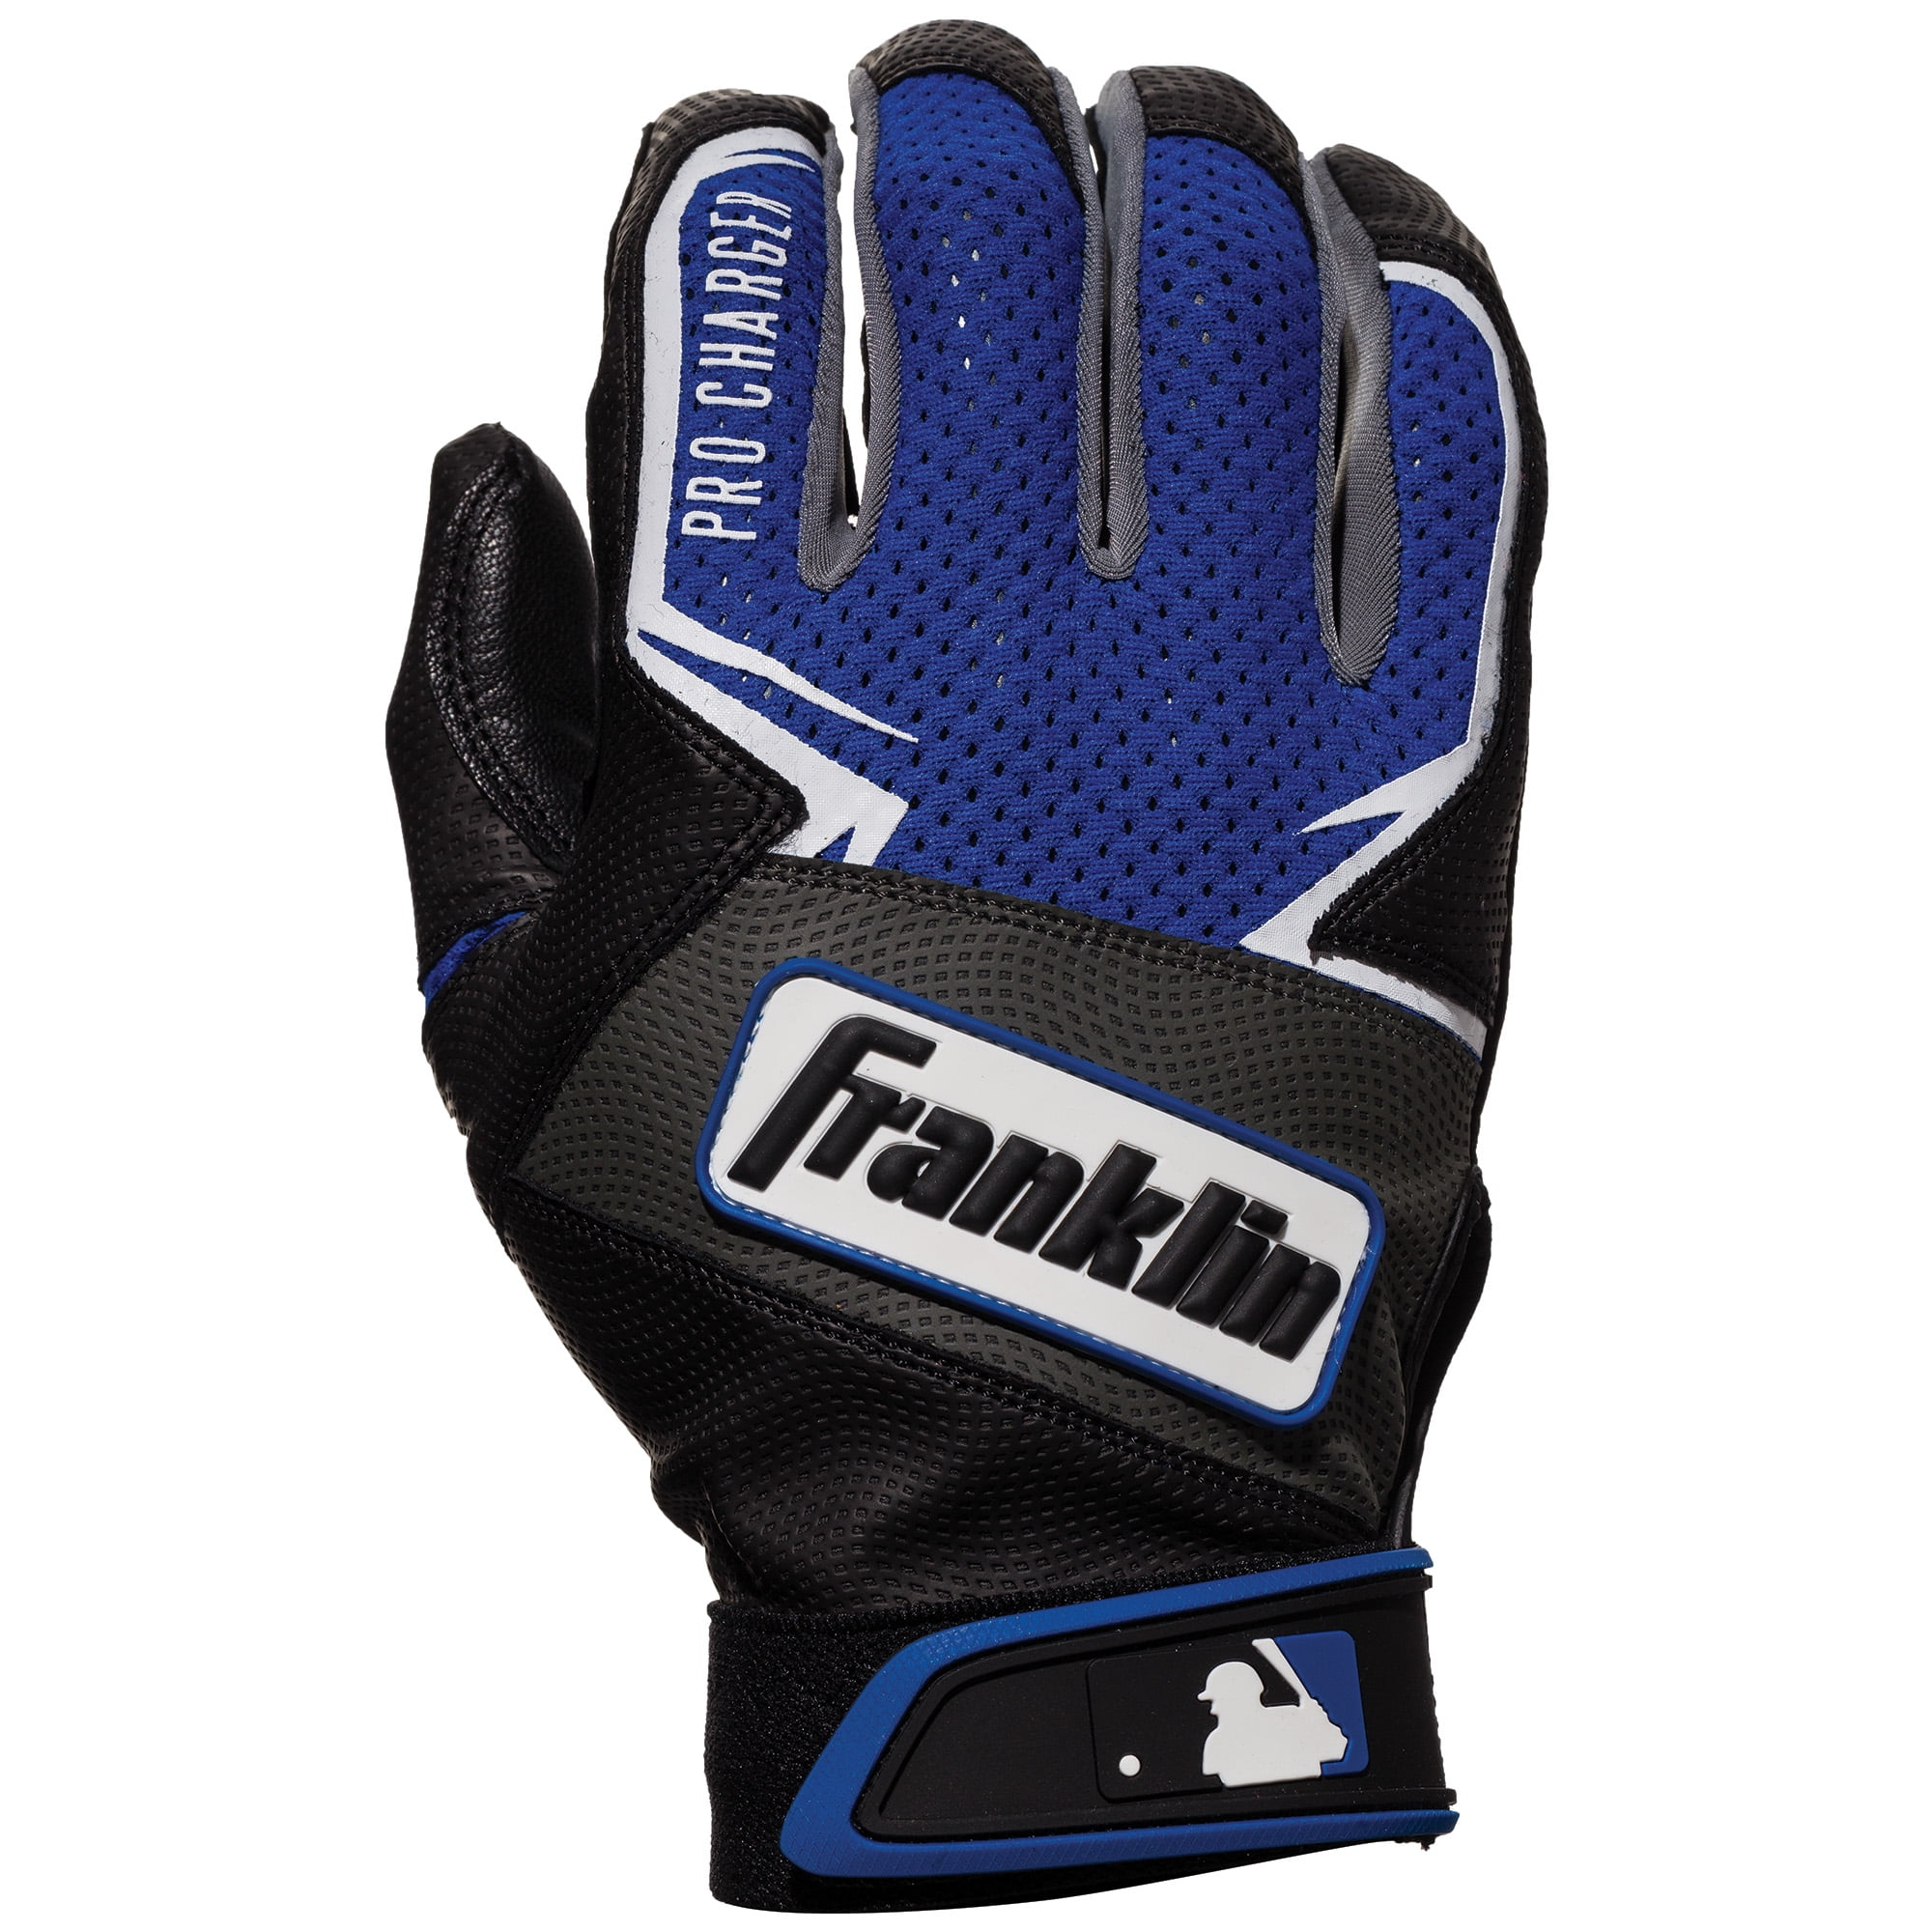 Blue/Black Franklin Pro Charger Adult Baseball Batting Gloves Size Small & Med 